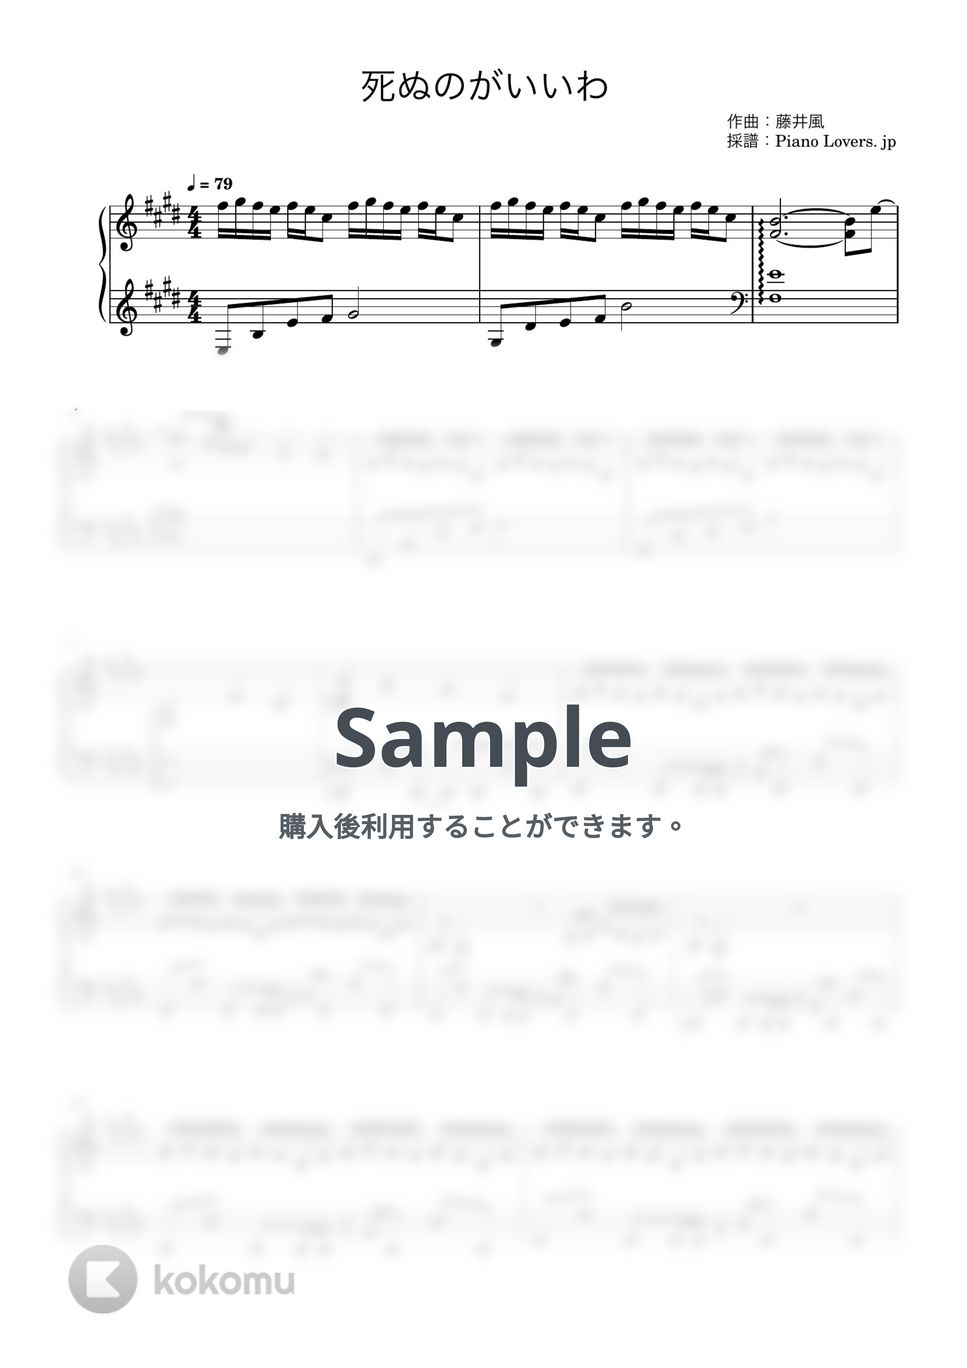 藤井風 - 死ぬのがいいわ by Piano Lovers. jp